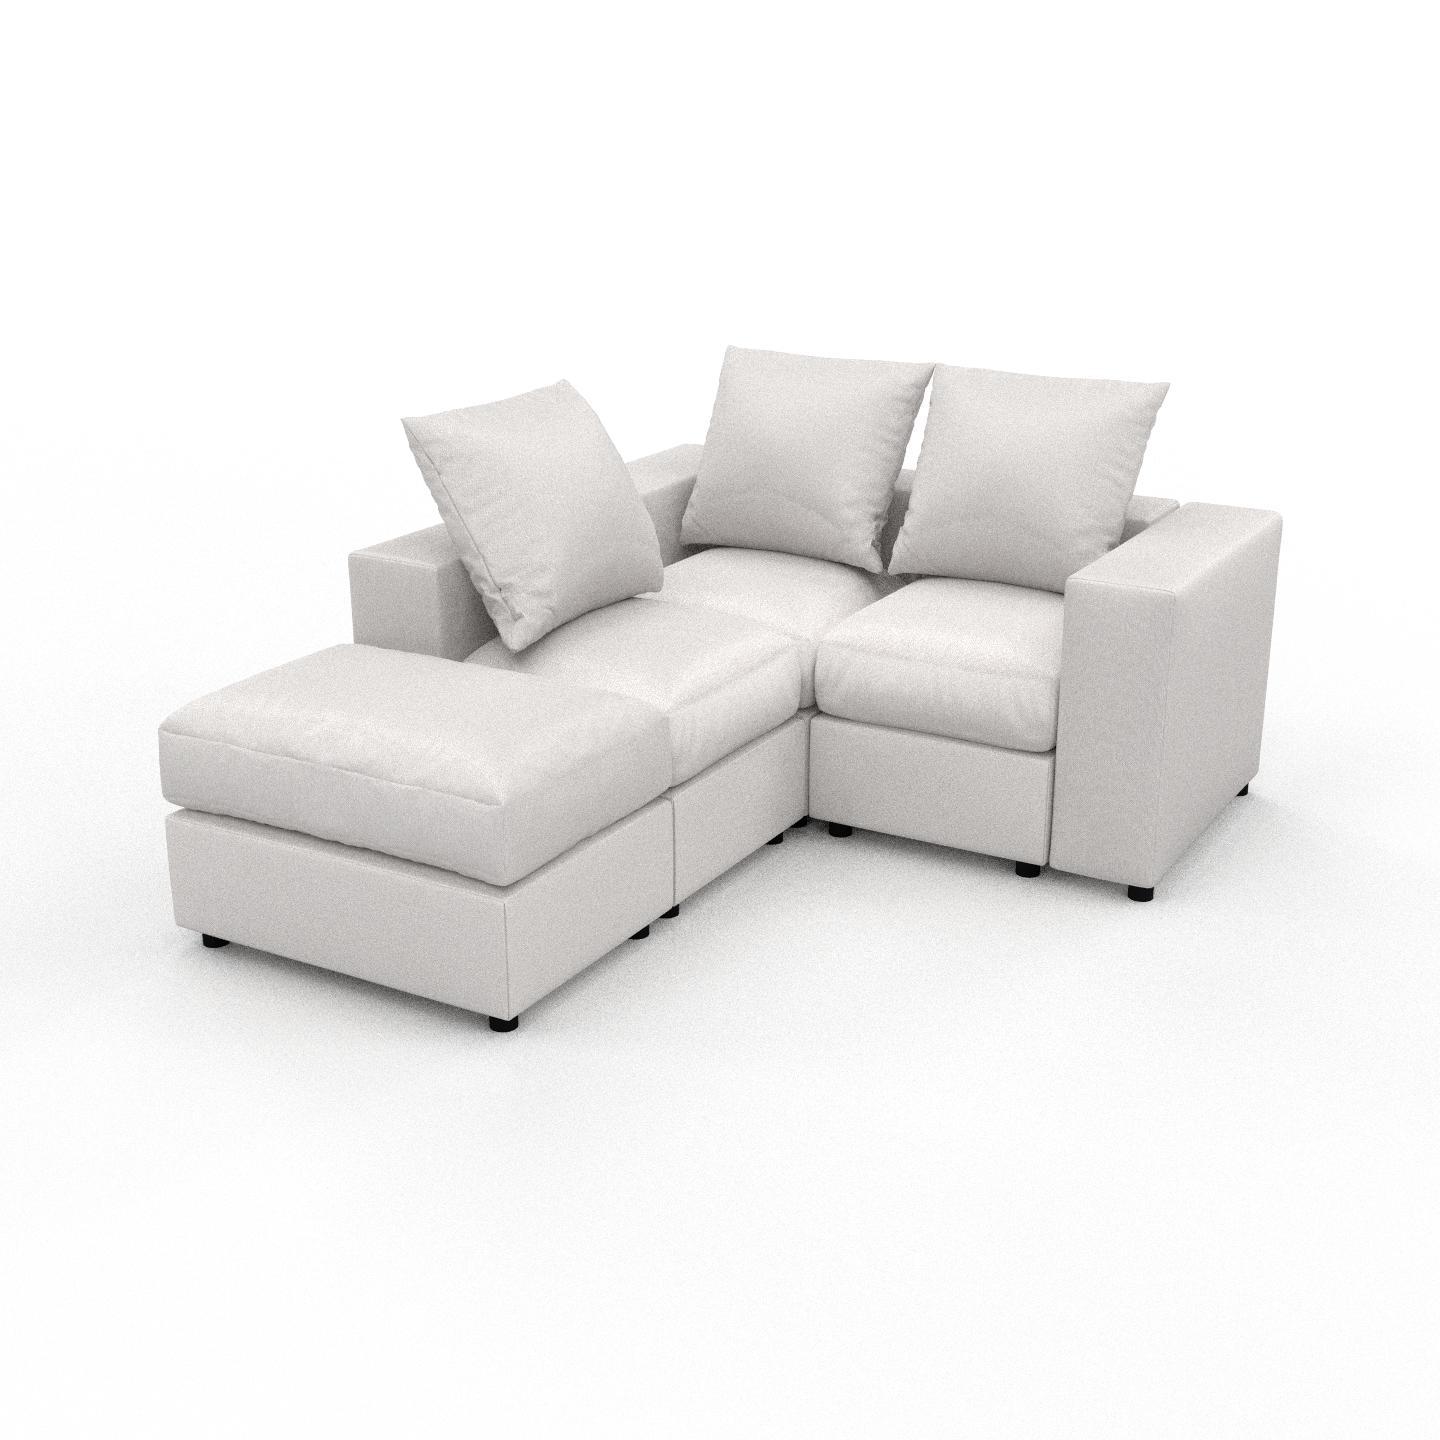 MYCS Ecksofa Weiß - Flexible Designer-Polsterecke, L-Form: Beste Qualität, einzigartiges Design - 156 x 62 x 186 cm, konfigurierbar